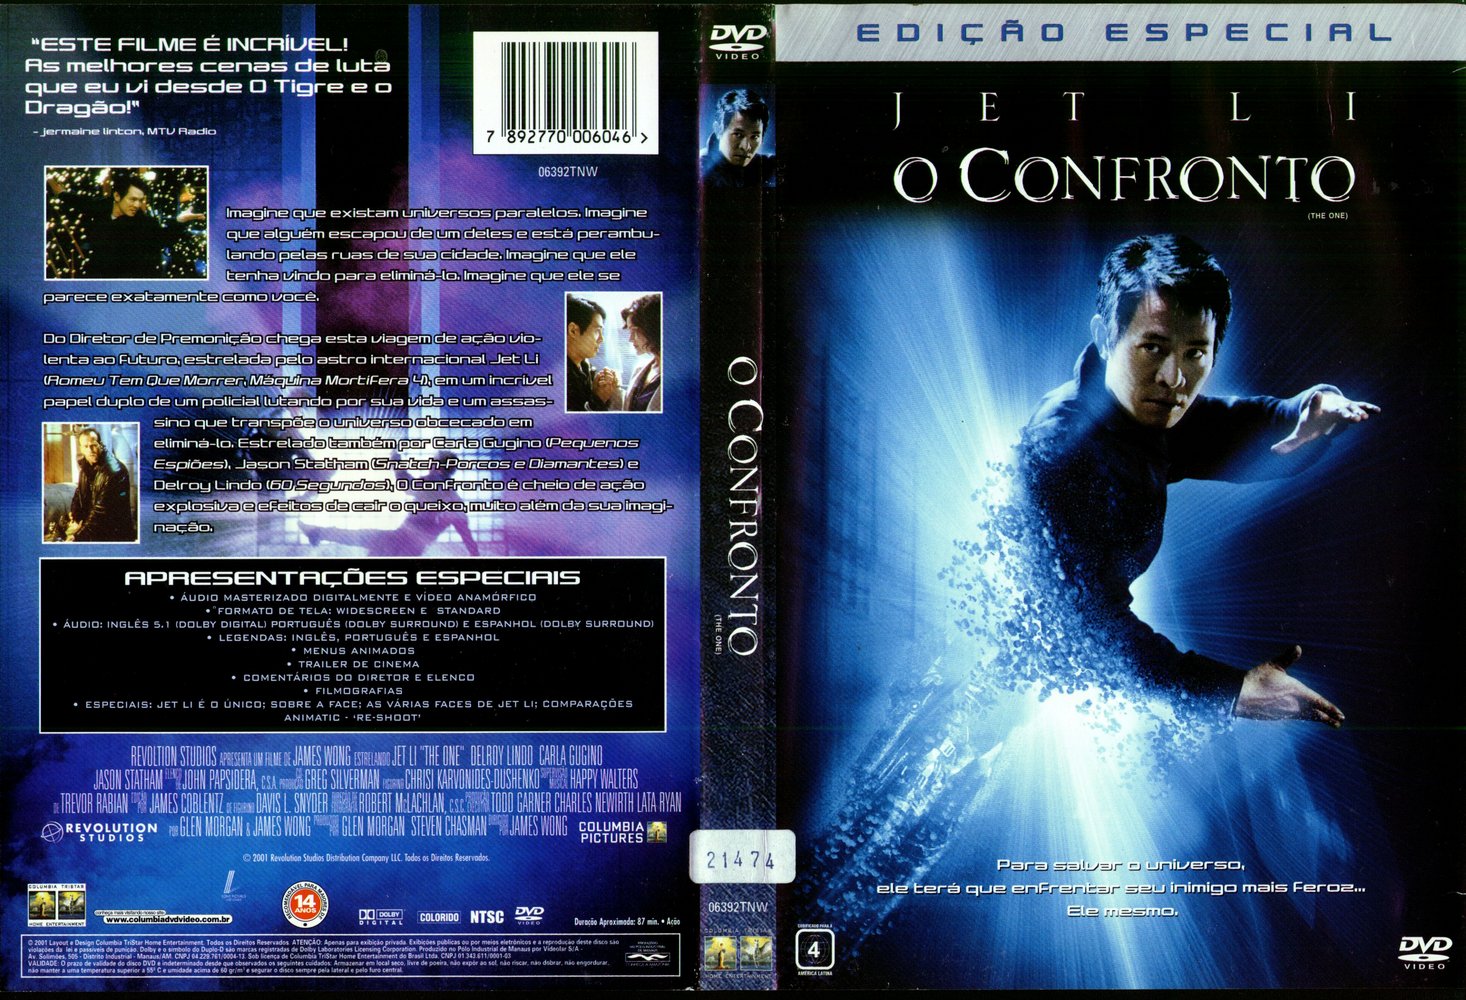 The One - O Confronto (2002). Oconfronto